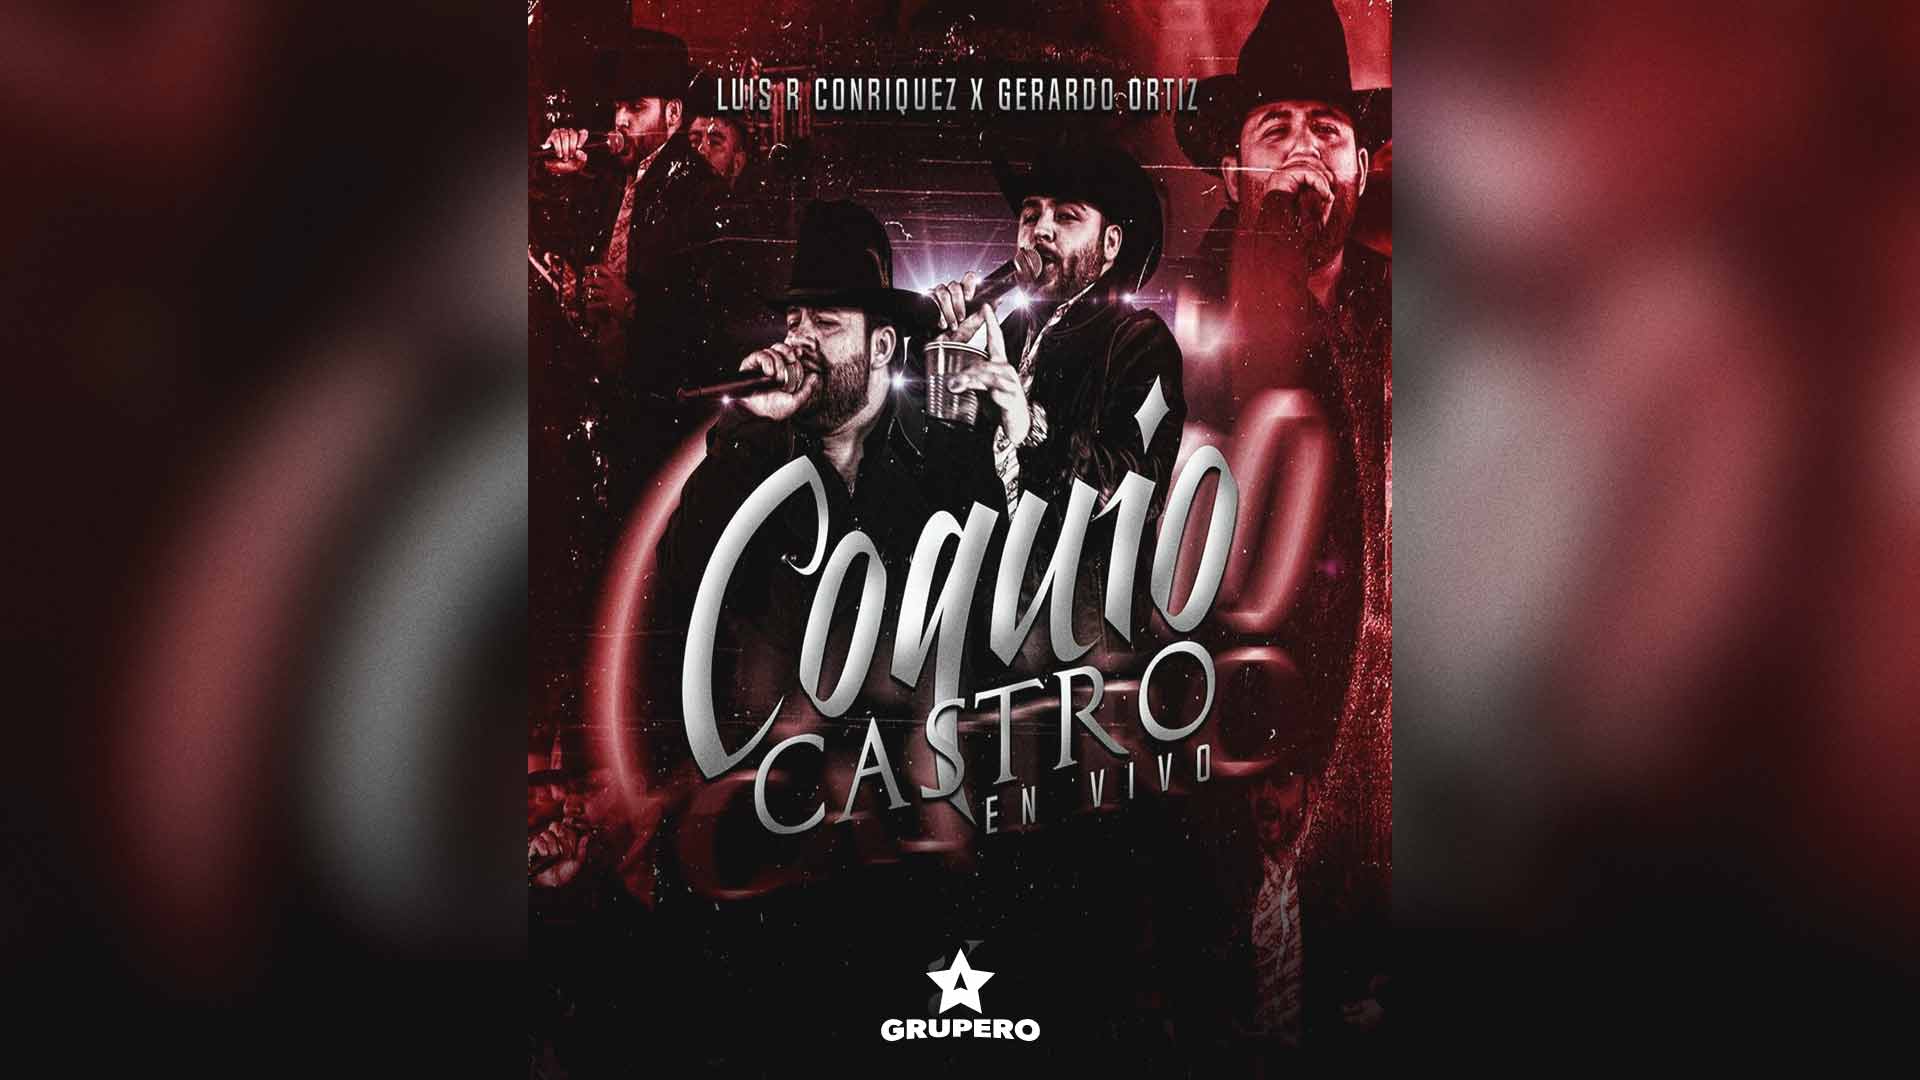 Letra “Coquio Castro” – Luis R Conriquez & Gerardo Coronel